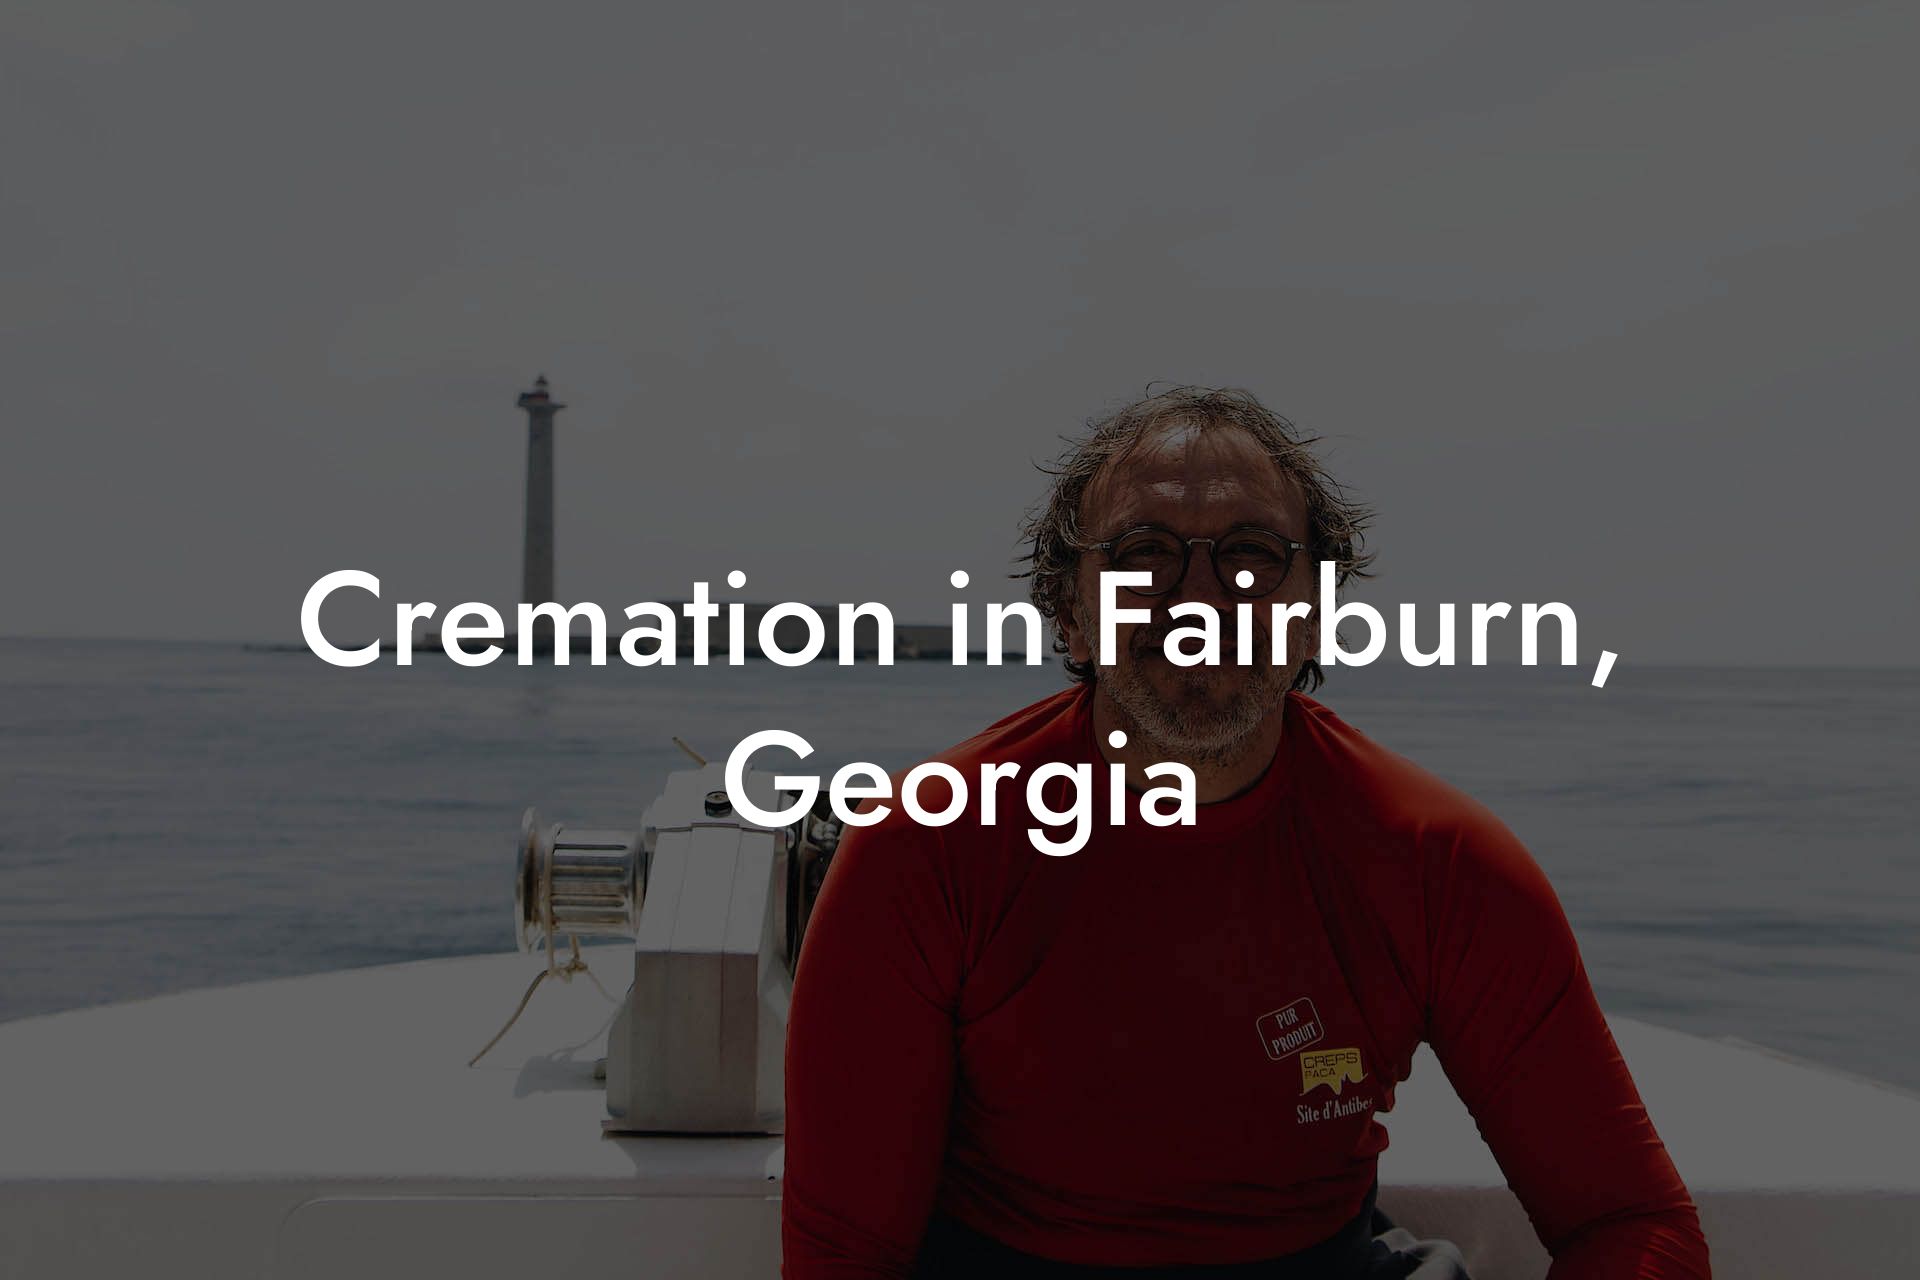 Cremation in Fairburn, Georgia